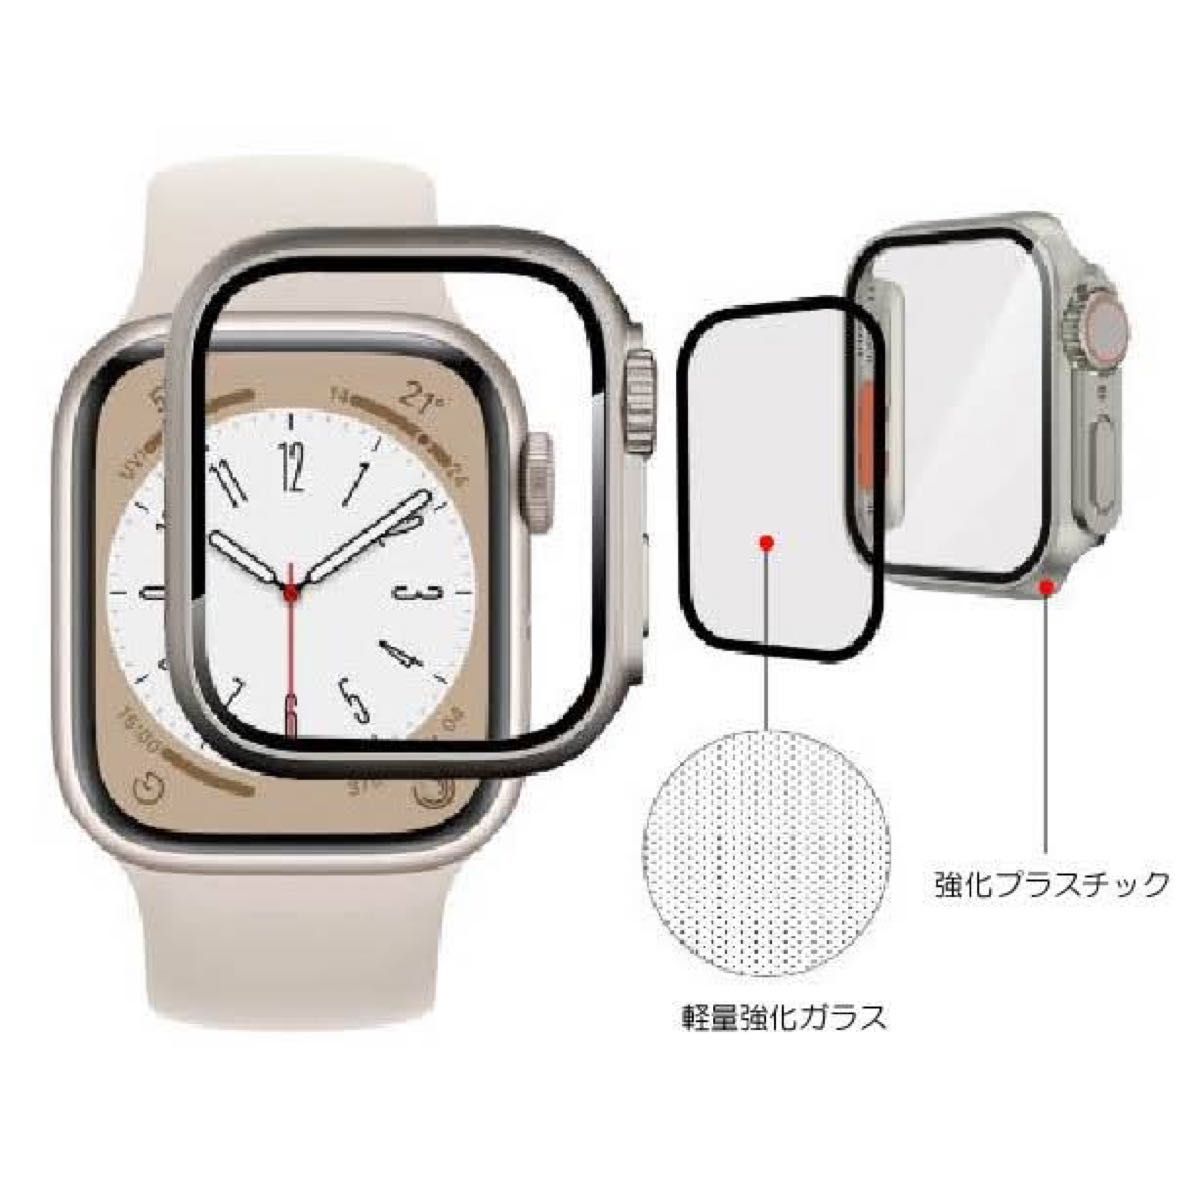 Apple Watch Ultra-style Case serise 6/5/4/se 40mm